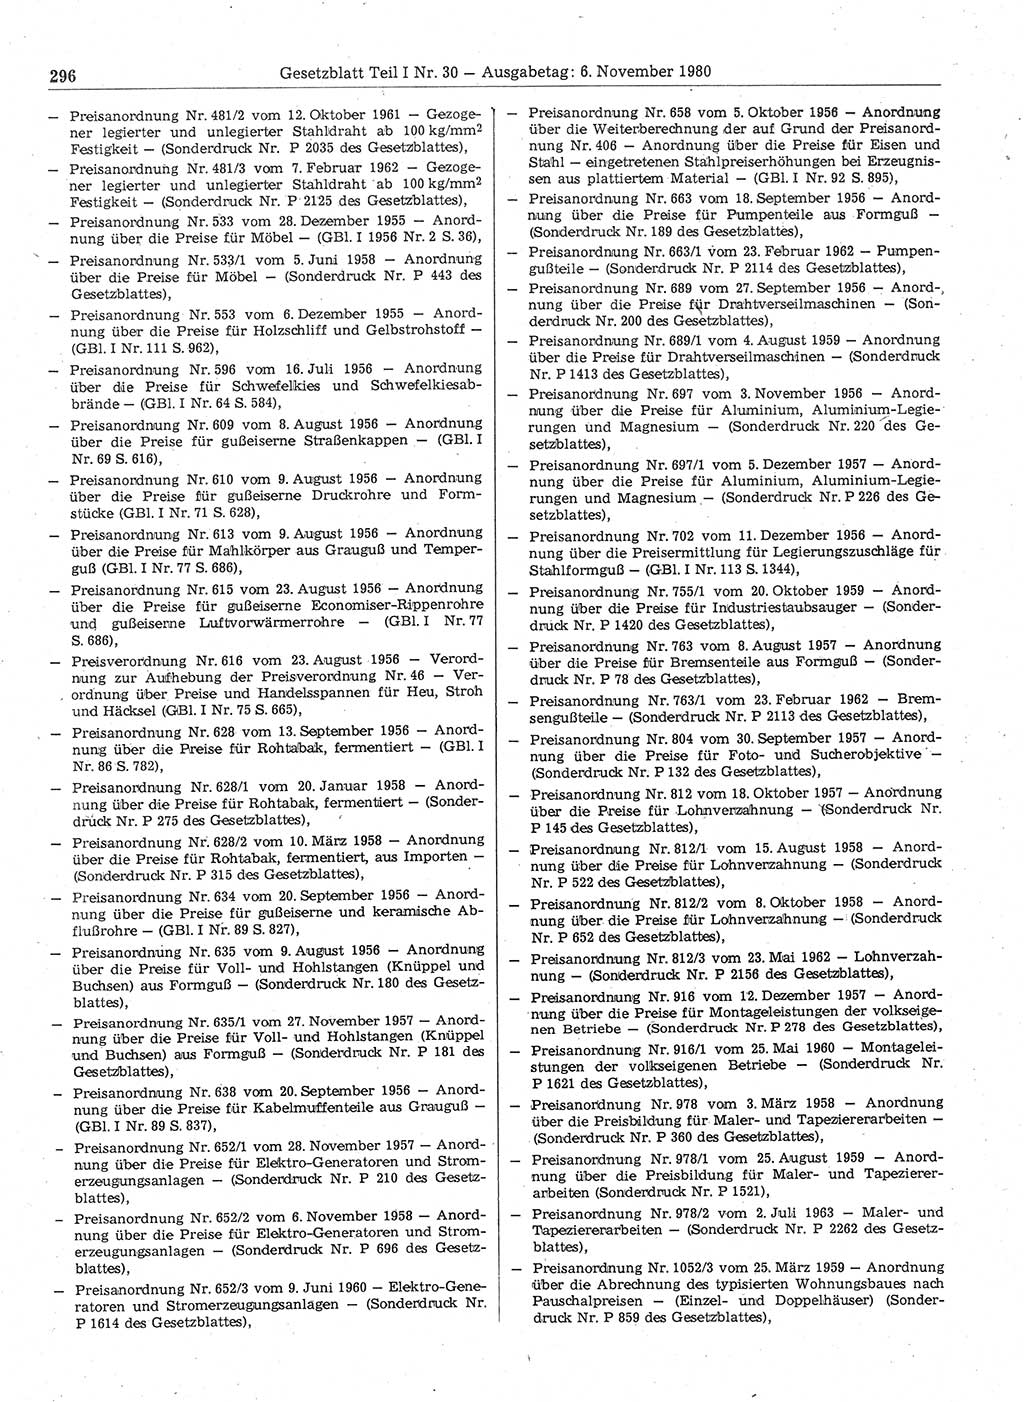 Gesetzblatt (GBl.) der Deutschen Demokratischen Republik (DDR) Teil Ⅰ 1980, Seite 296 (GBl. DDR Ⅰ 1980, S. 296)